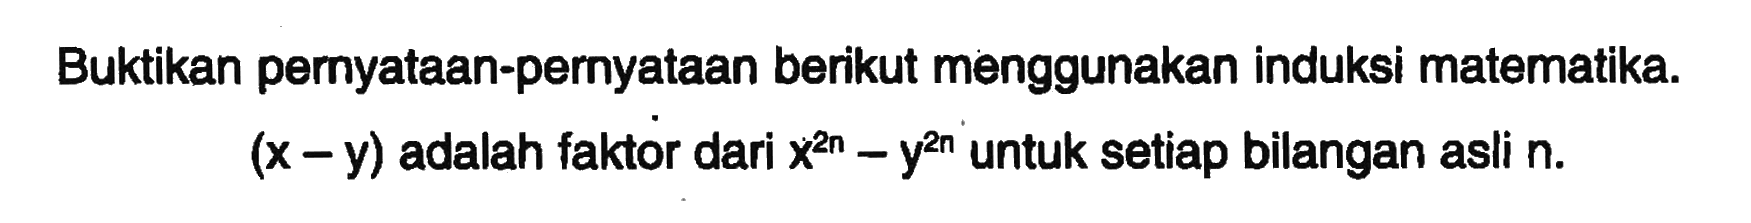 Buktikan pernyataan-pernyataan berikut menggunakan induksi matematika. (x-y) adalah faktor dari x^(2n)-y^(2n) untuk setiap bilangan asli n.